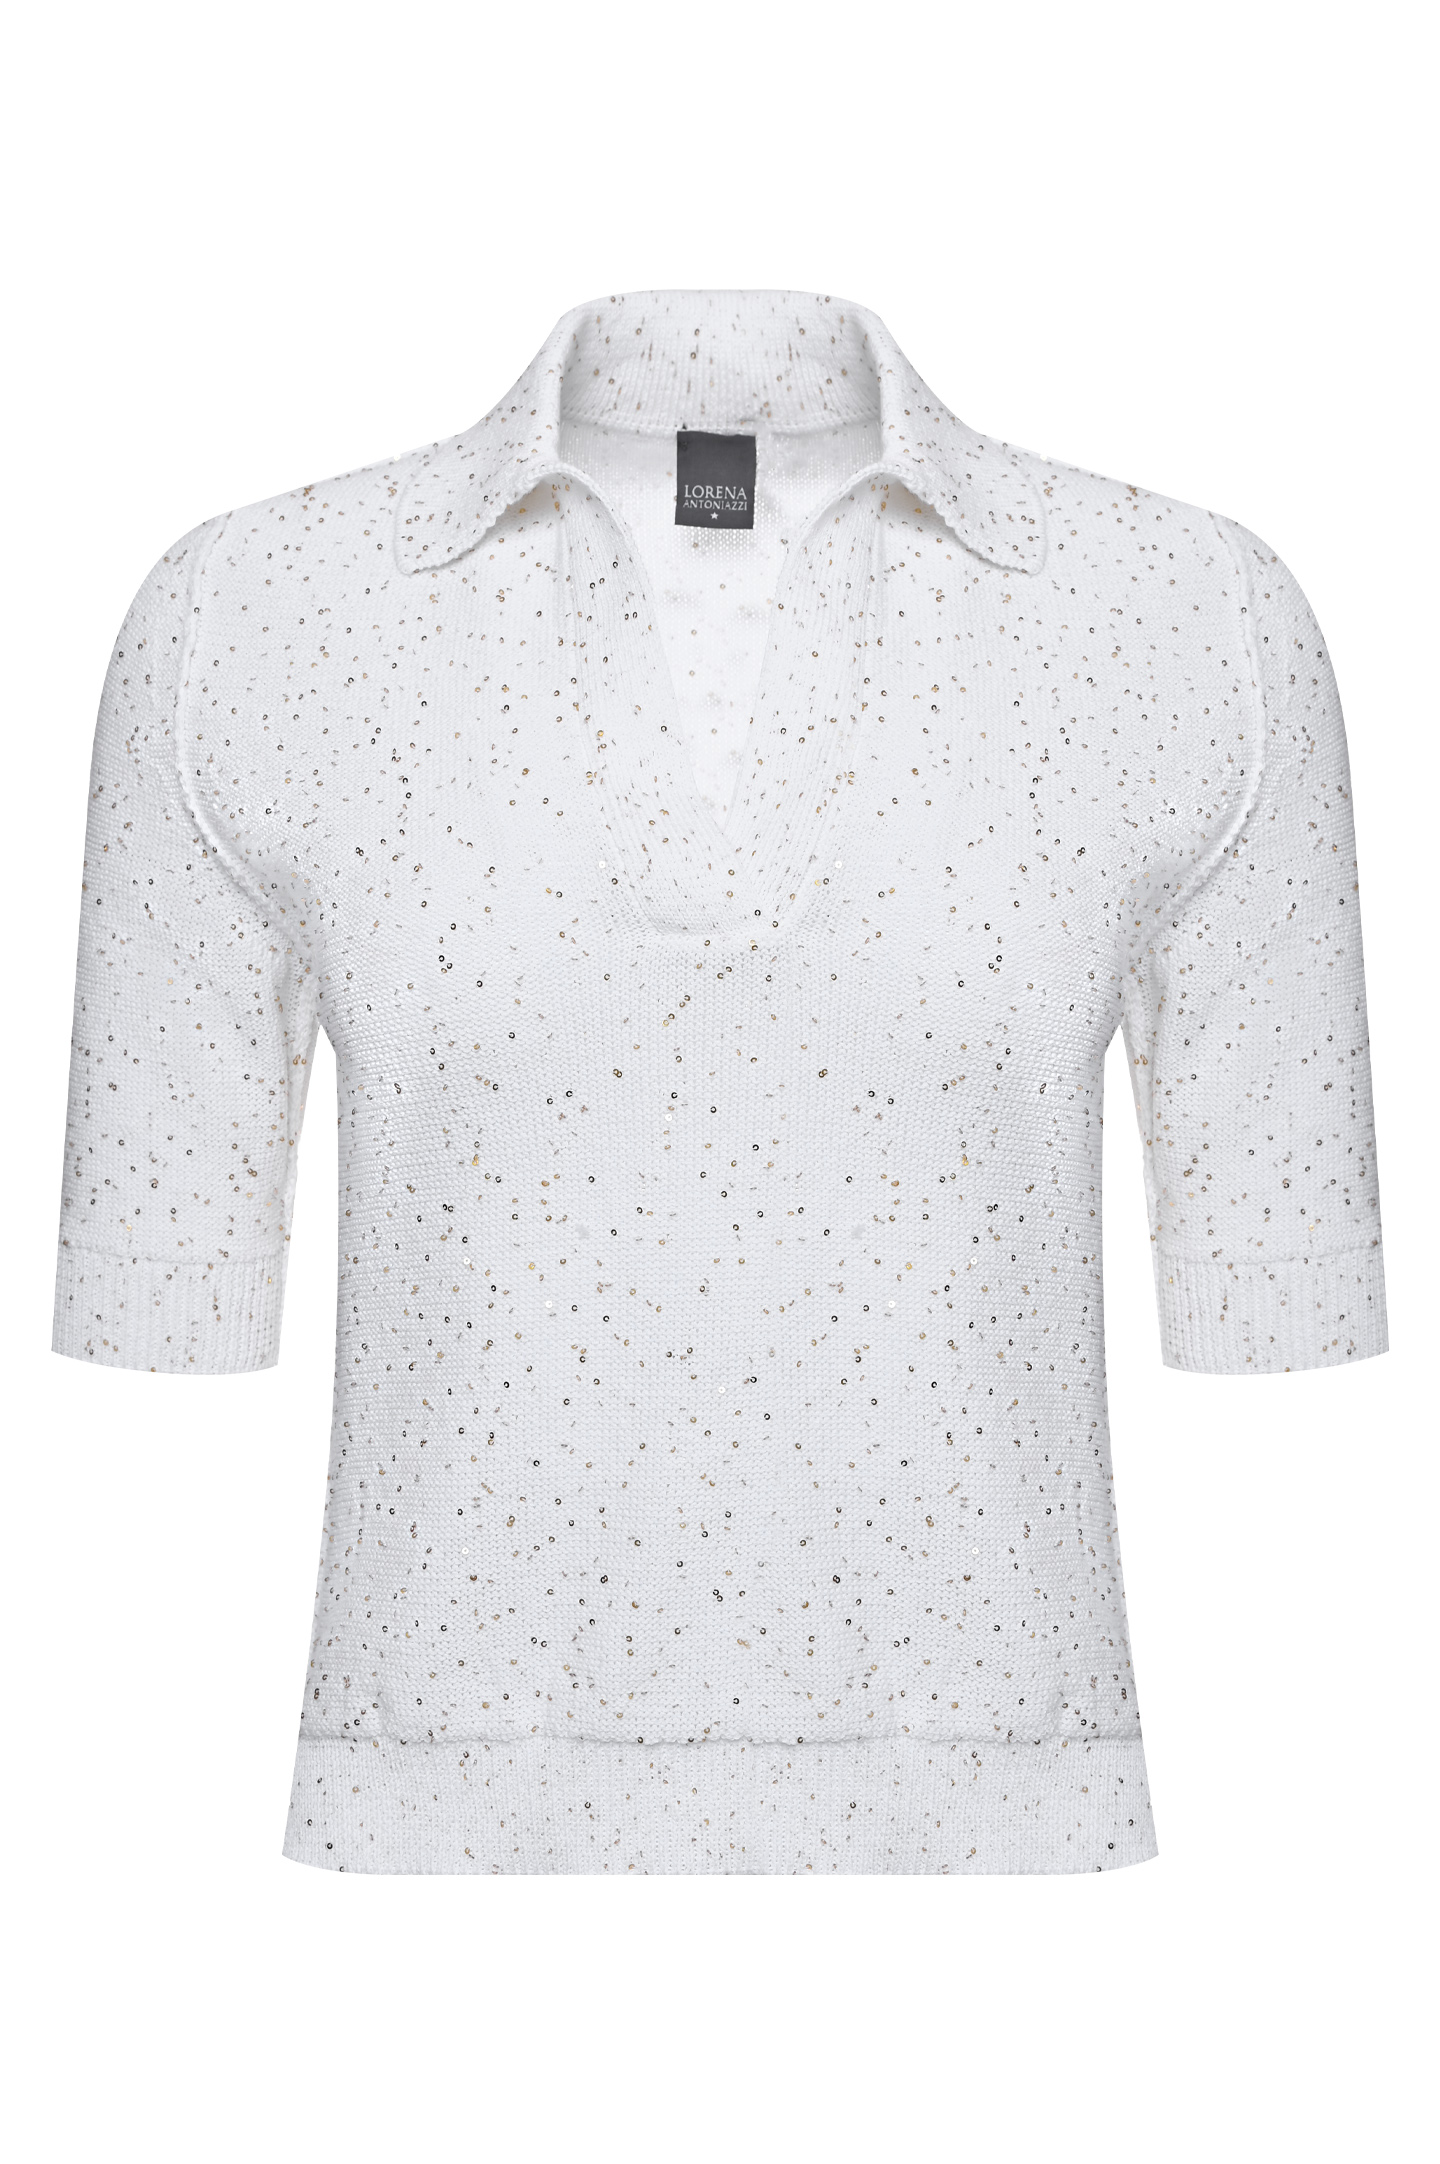 Блуза LORENA ANTONIAZZI P23145VM40A/2545, цвет: Белый, Женский